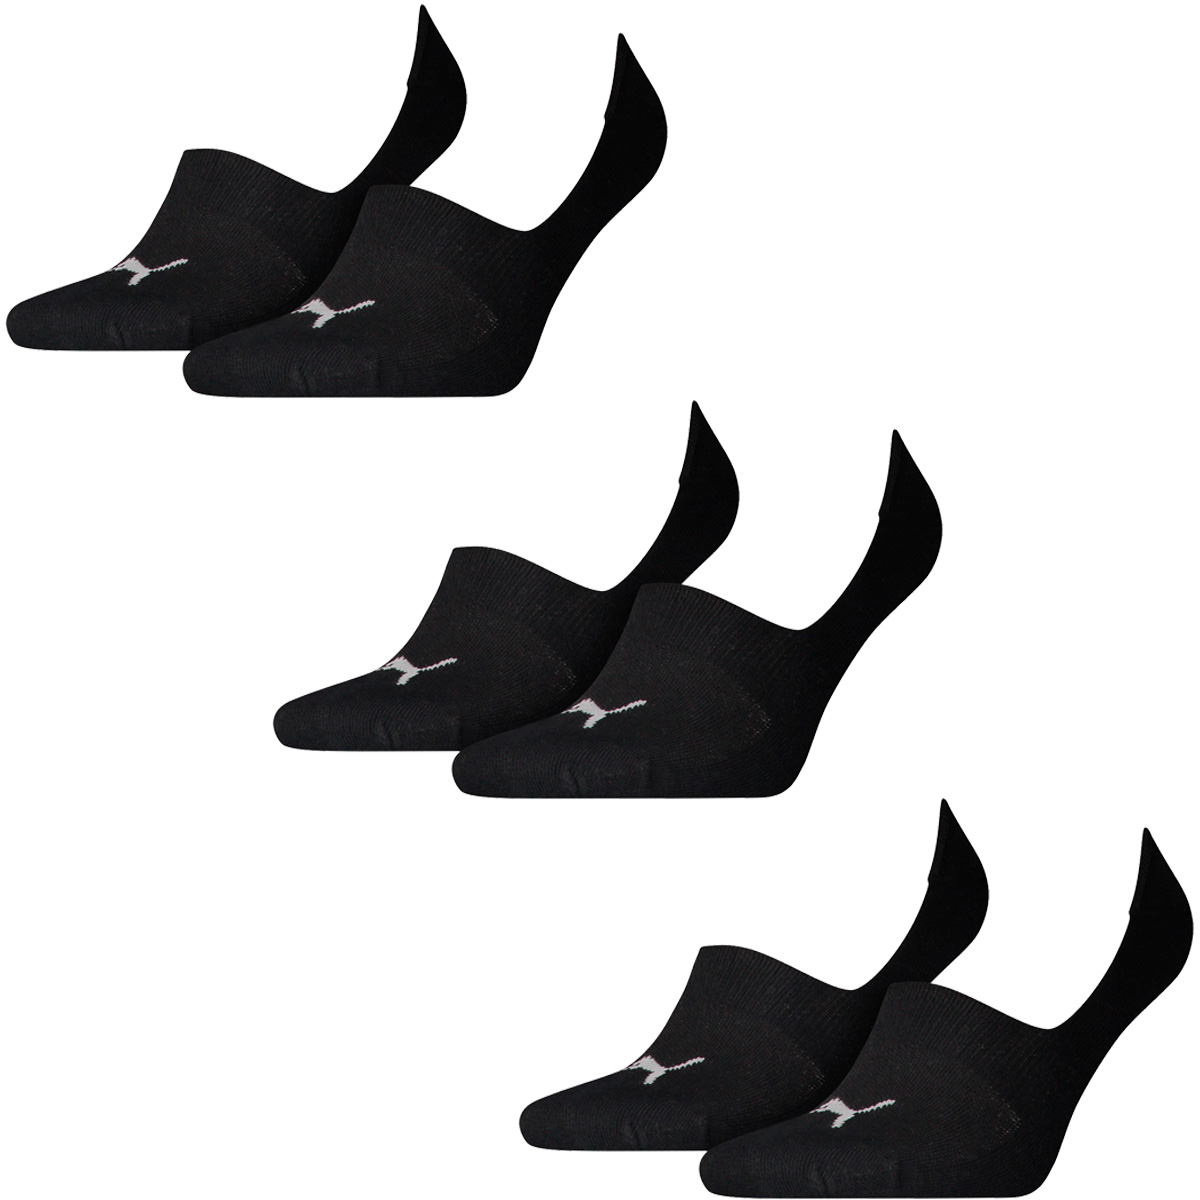 Puma 10 Paar Socken Footie Sportsocken Invisible Gr. 35-46 Unisex, Farbe:200 - black, Socken & Strümpfe:39-42